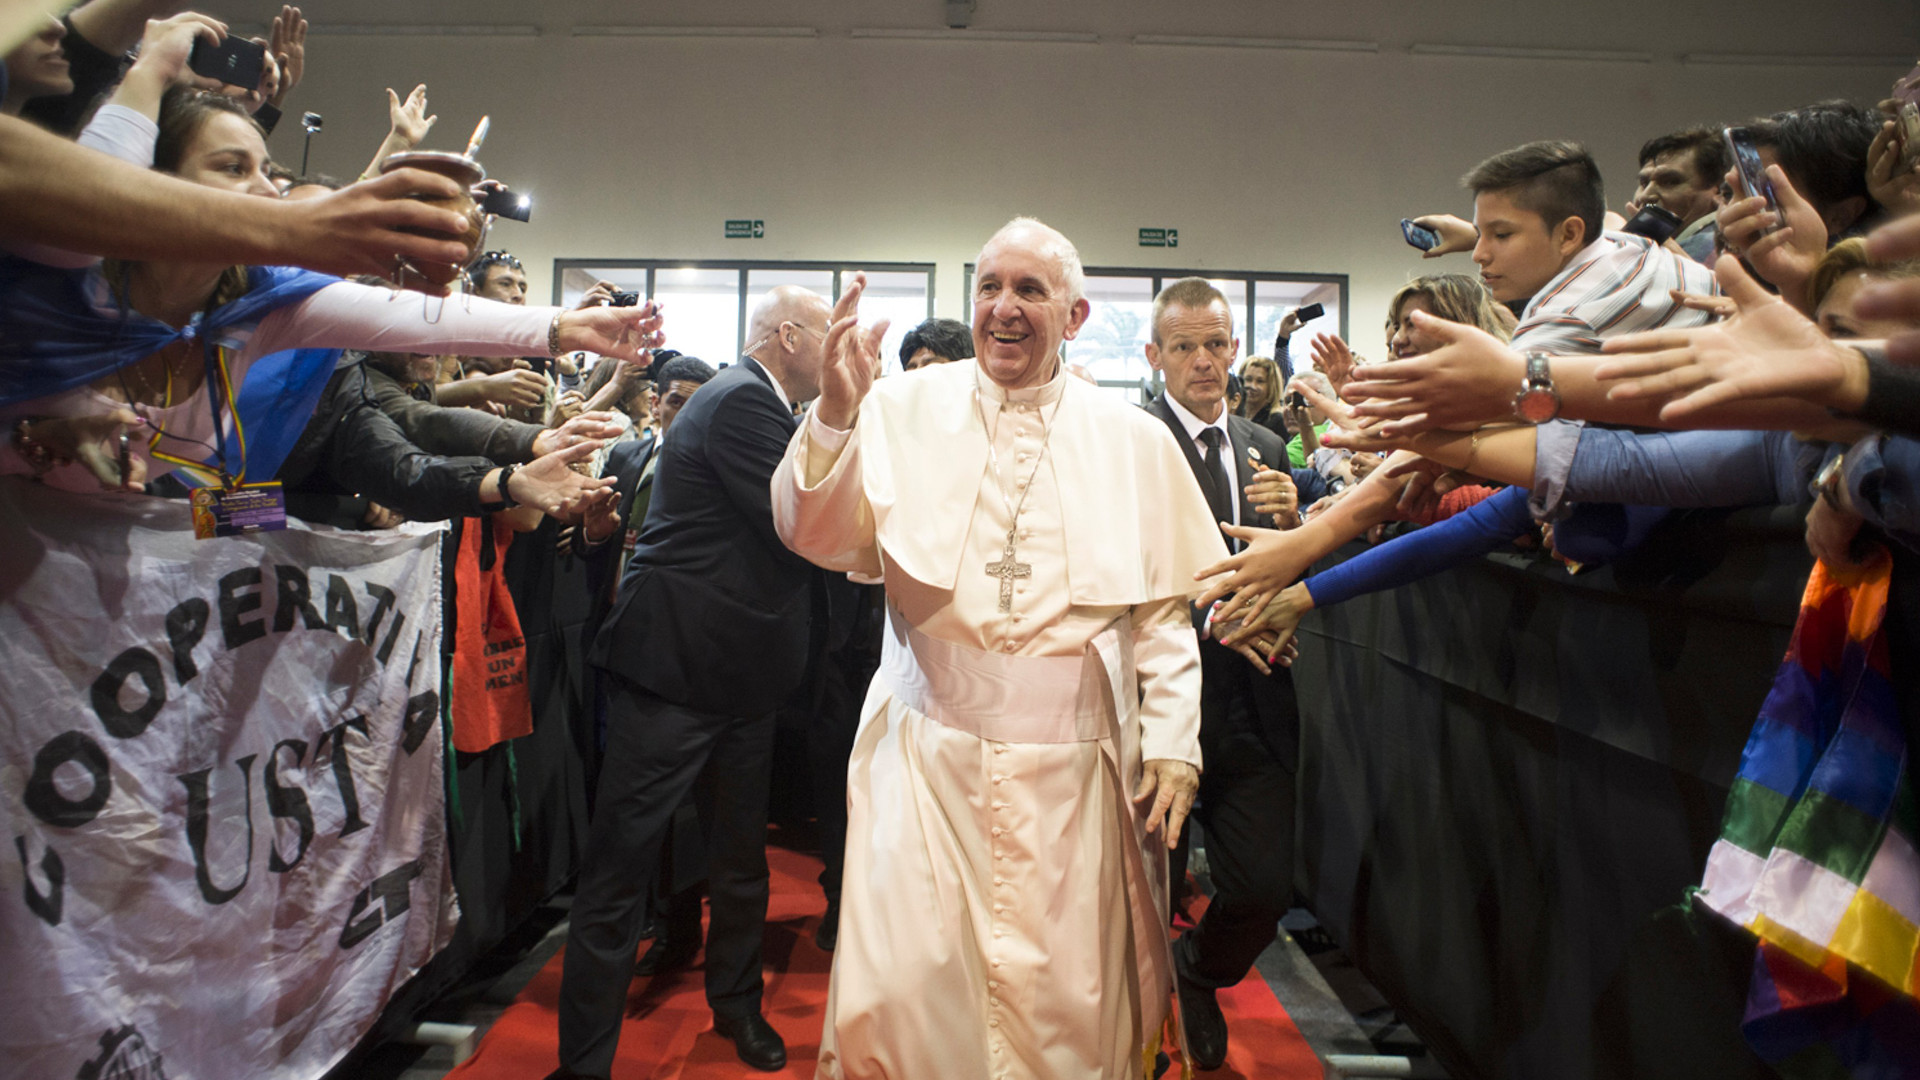 Selbst ein Jesuit: Papst Franziskus wird euphorisch begrüsst beim Welttreffen der Volksbewegungen Santa Cruz in Bolivien am 9. Juli 2015